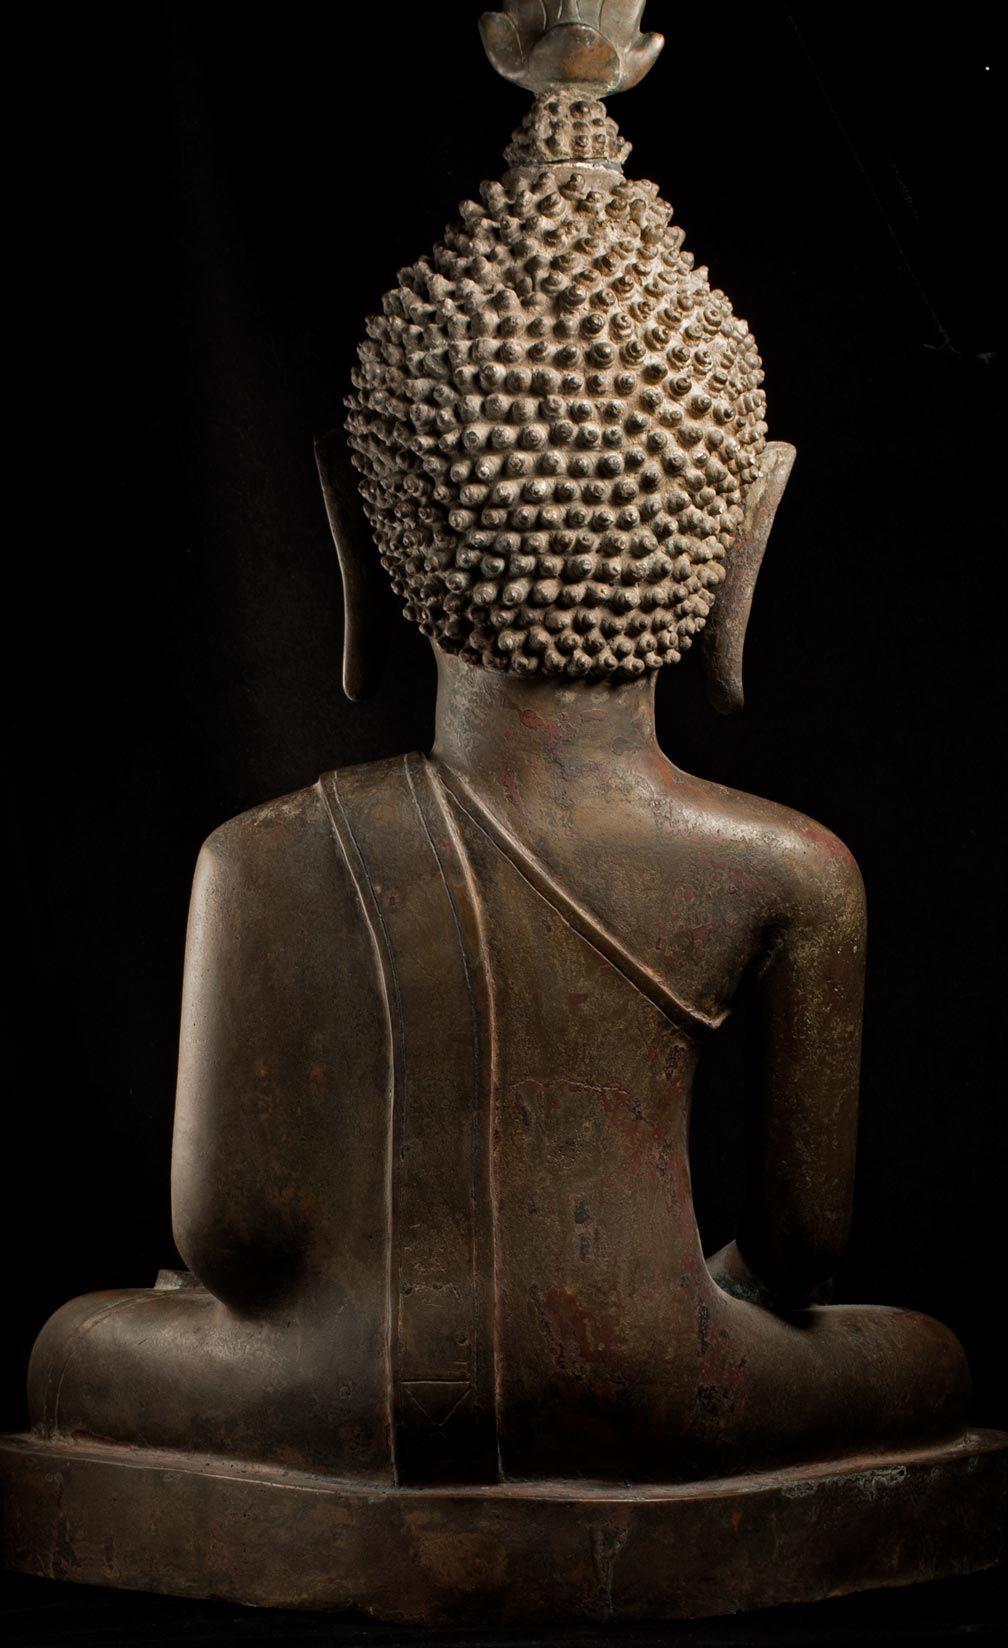 Grand royaume de Bouddha en bronze du 18/19e siècle de Nan dans le nord-est de la Thaïlande - 8961 4